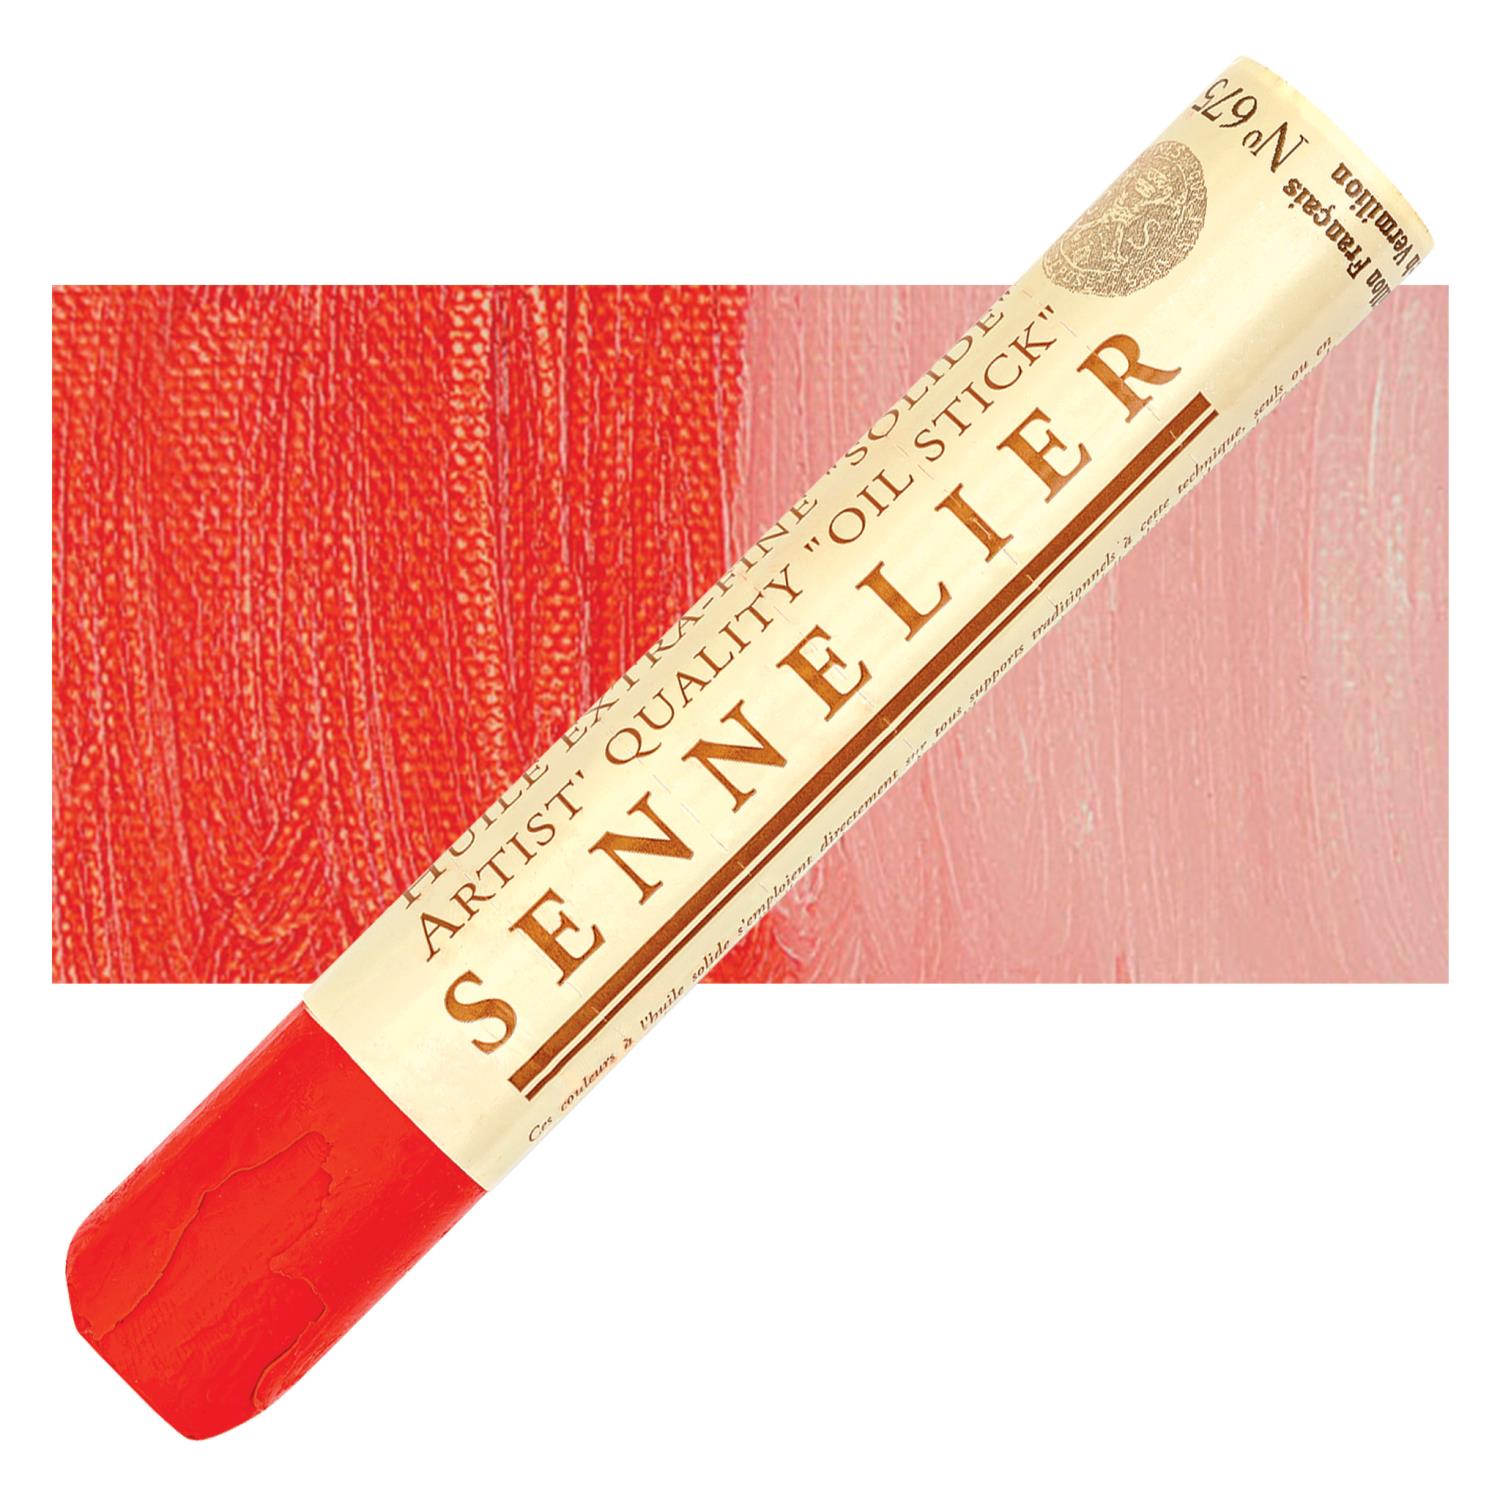 Sennelier Artist Oil Stick 38ml - 675 French Vermilion S1